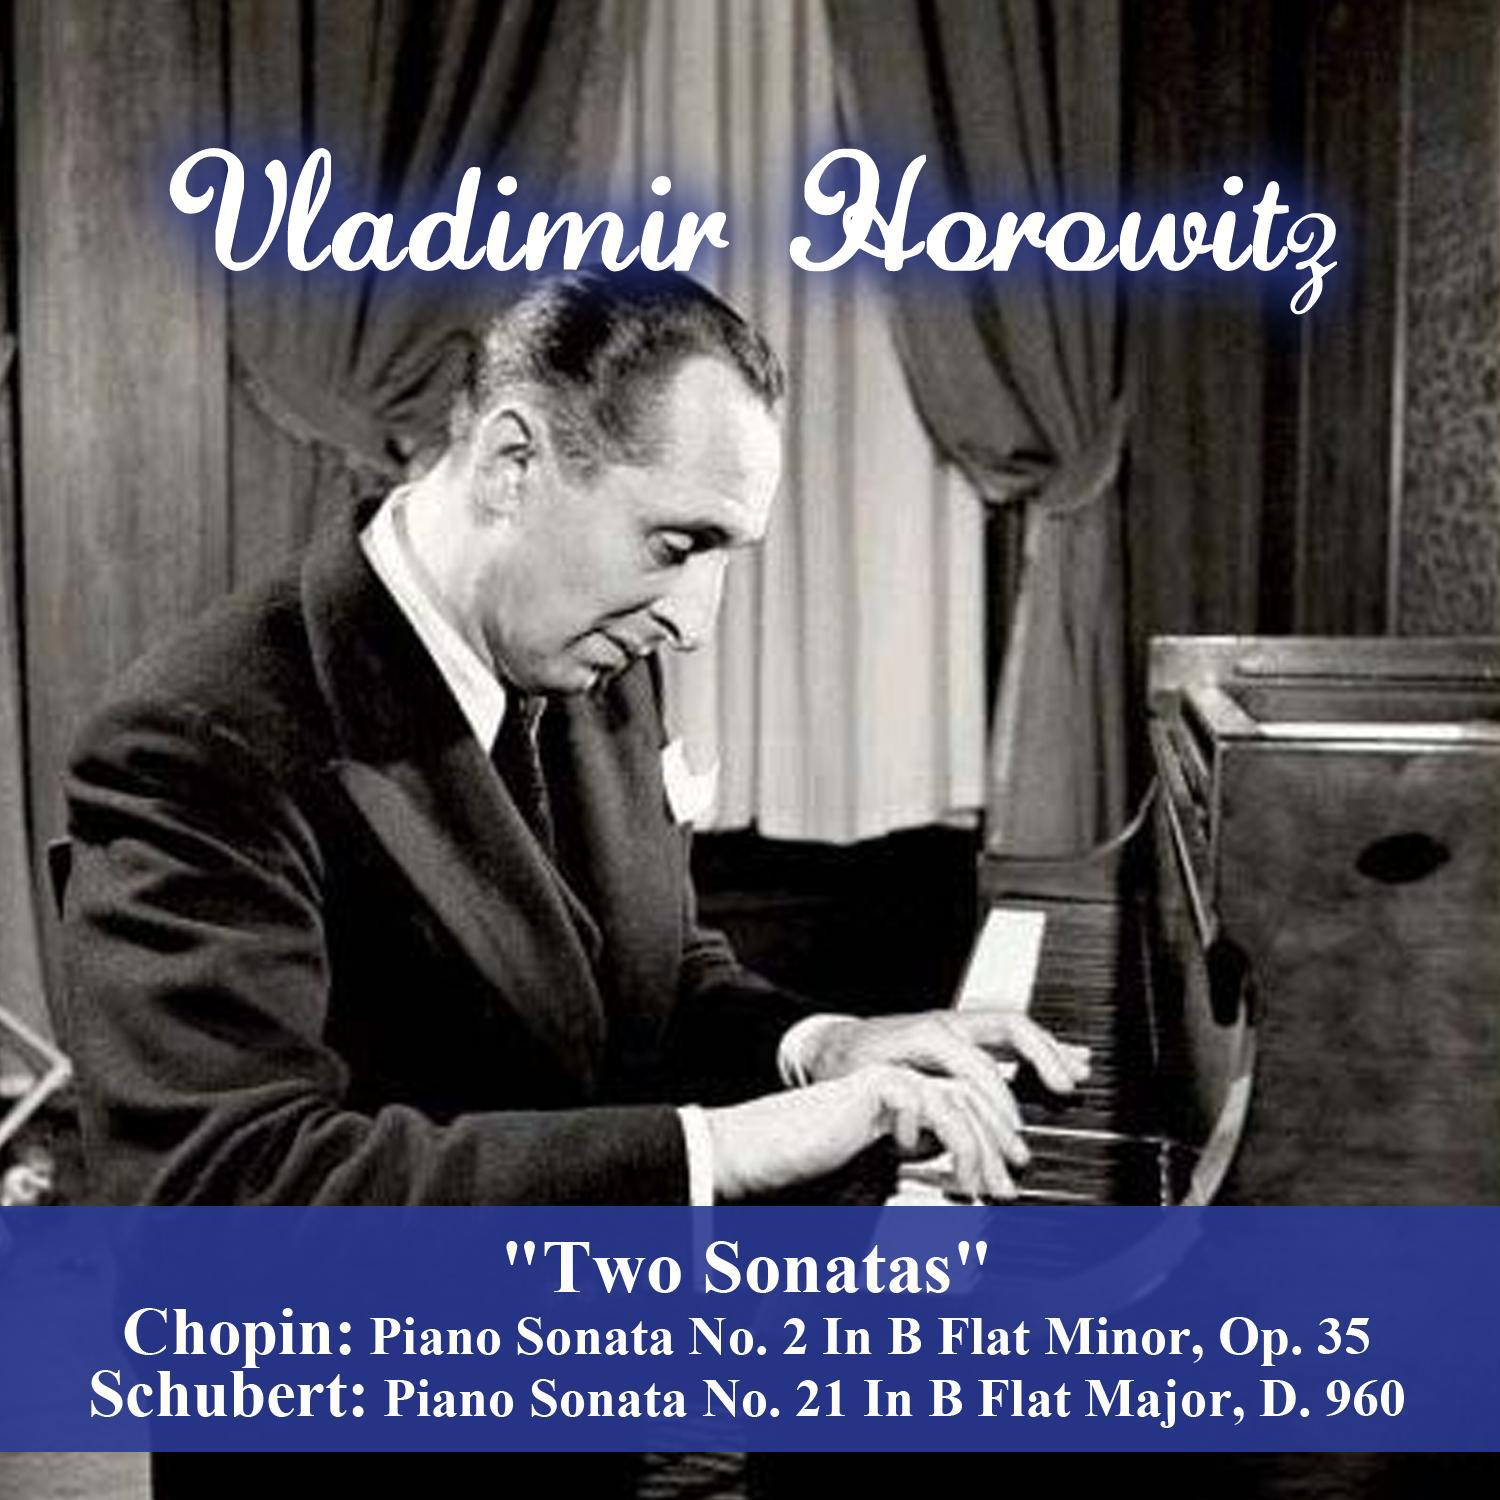 "Two Sonatas" - Chopin: Piano Sonata No. 2 In B Flat Minor, Op. 35 - Schubert: Piano Sonata No. 21 In B Flat Major, D. 960